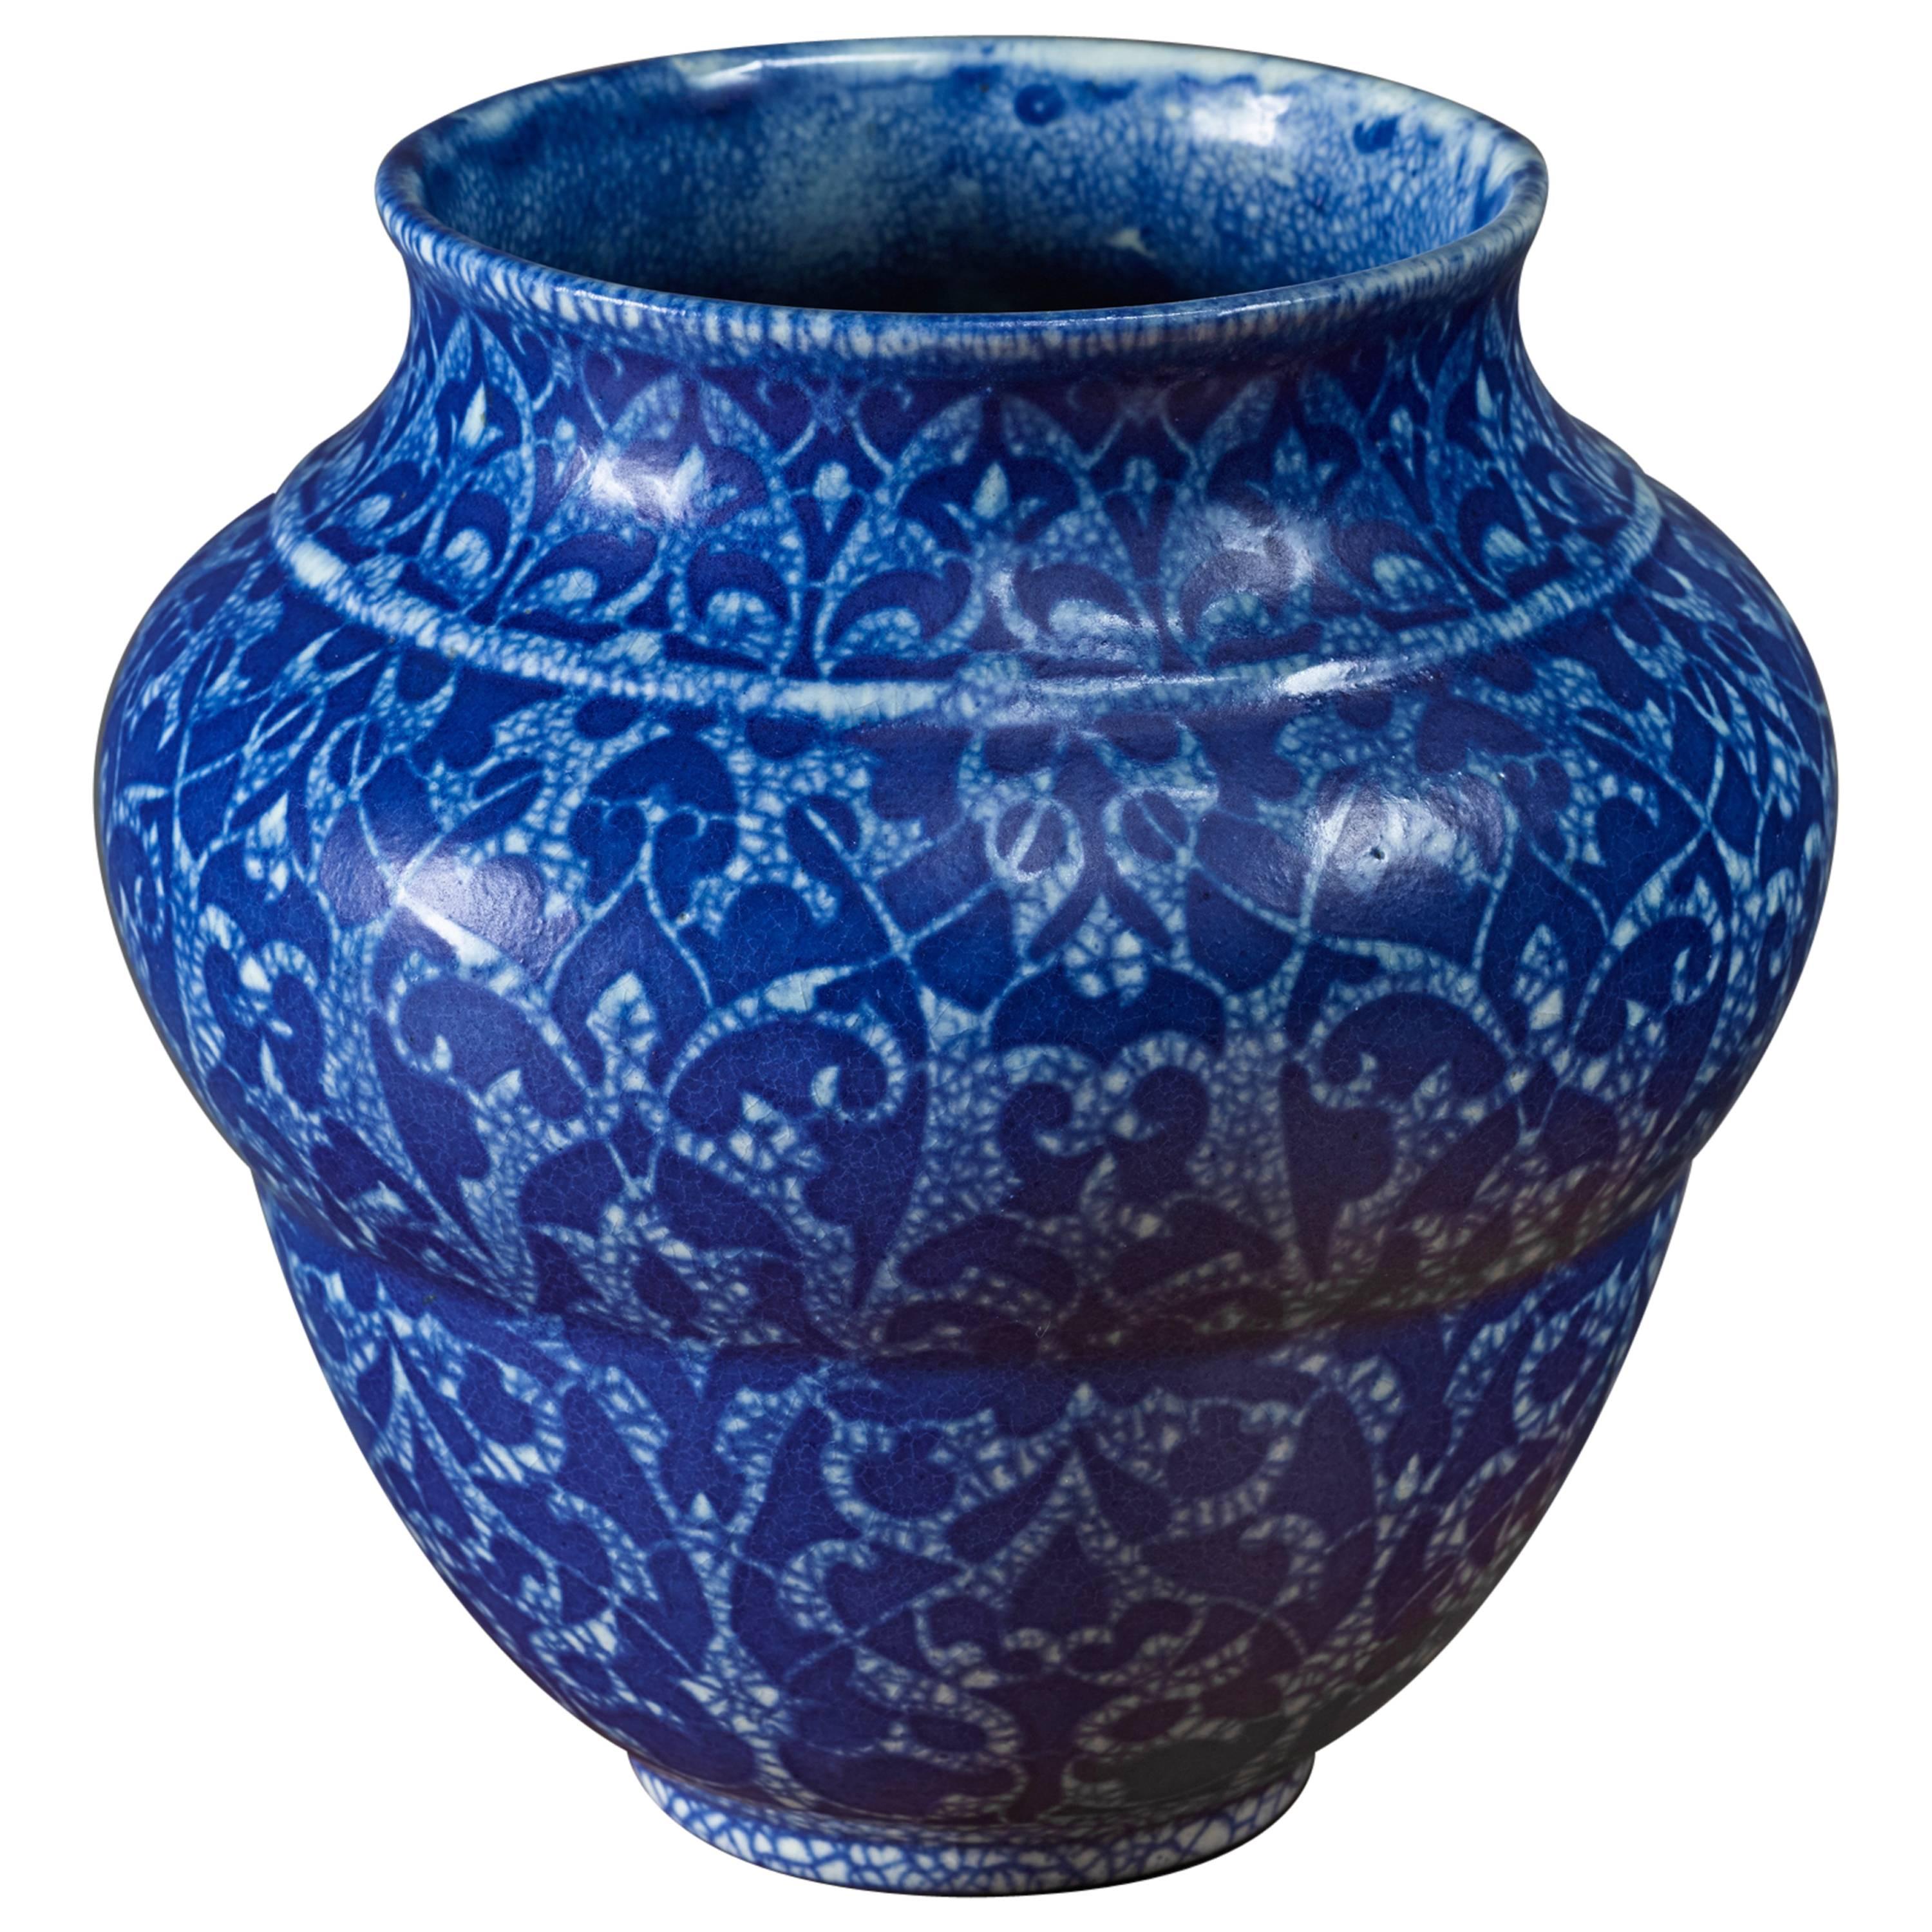 Velten Vordamm Art Deco Crackle Glaze Ceramic Vase, Germany, 1920s For Sale